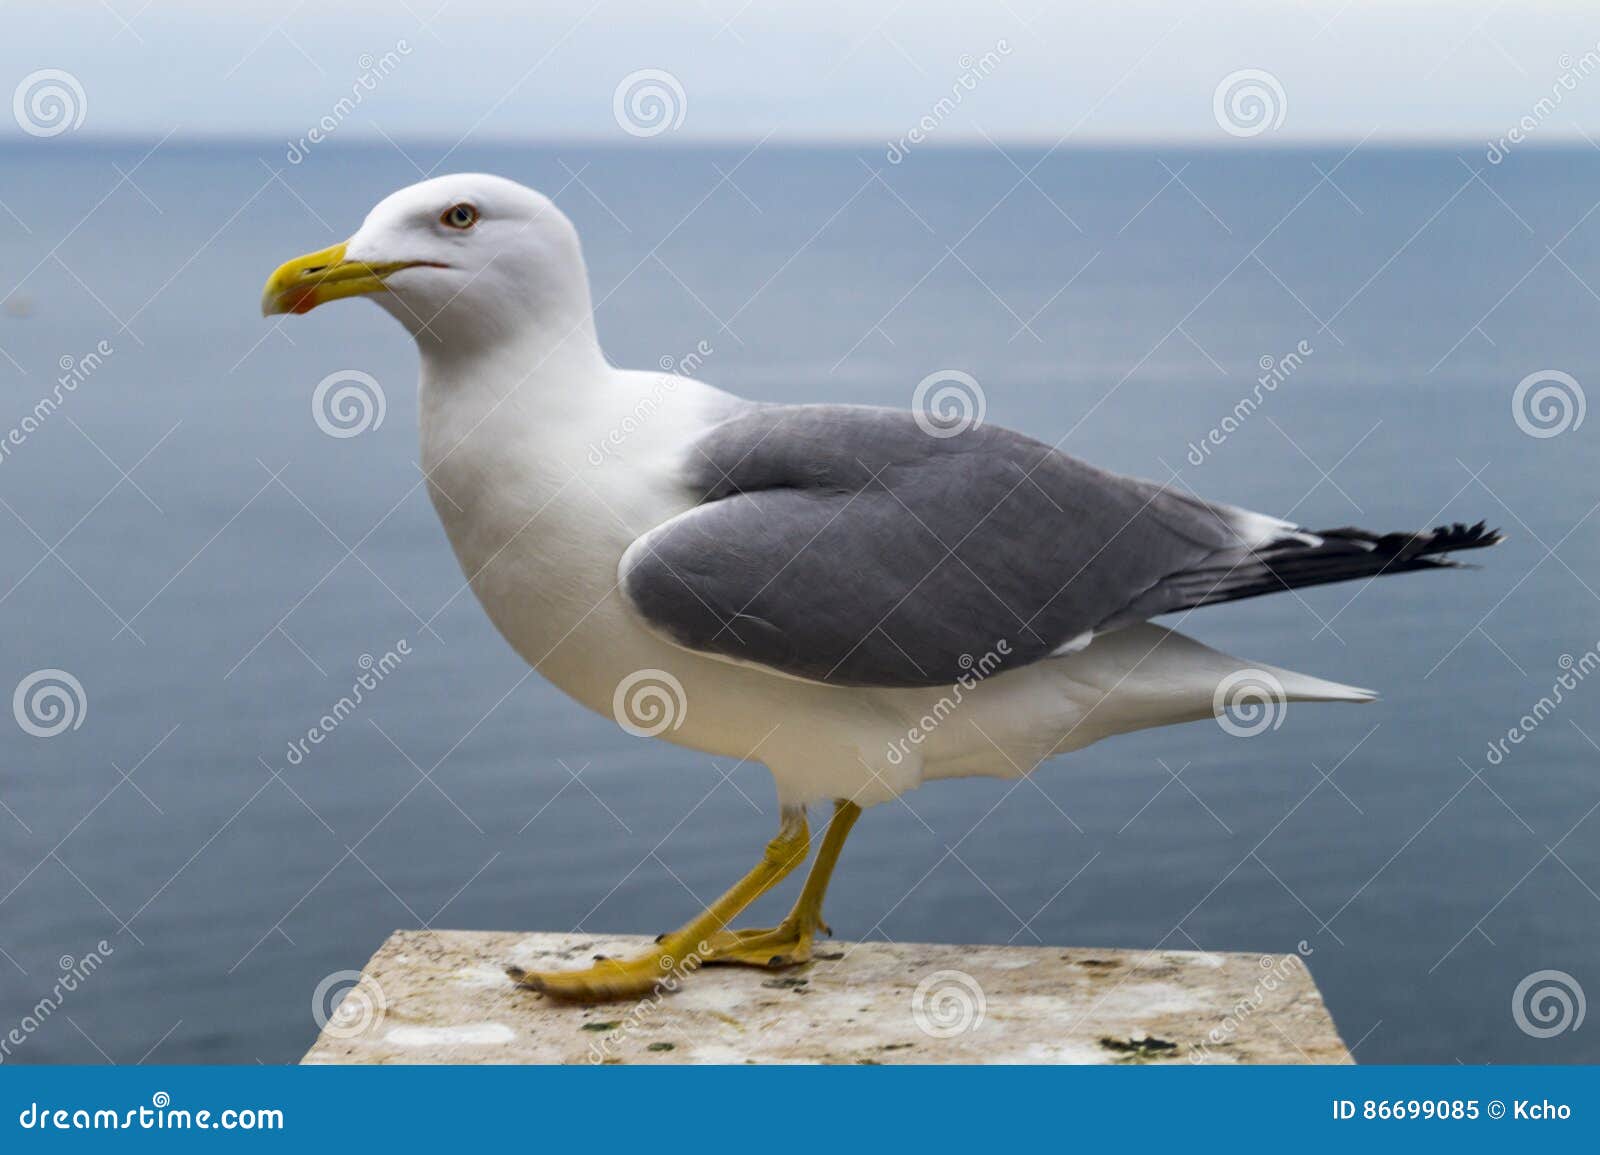 seagull at sea